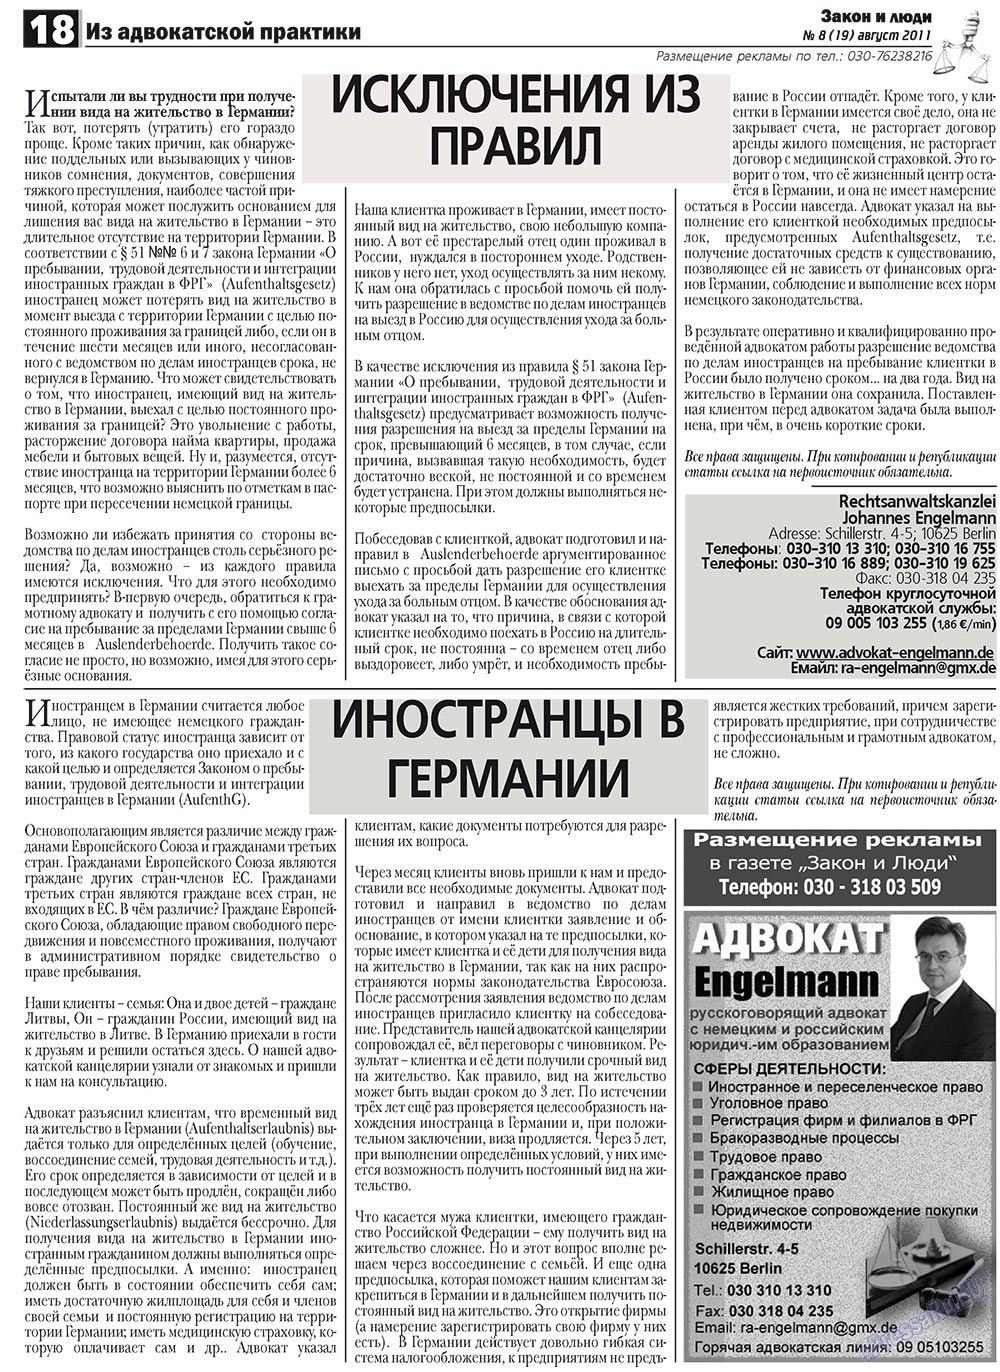 Закон и люди, газета. 2011 №8 стр.18